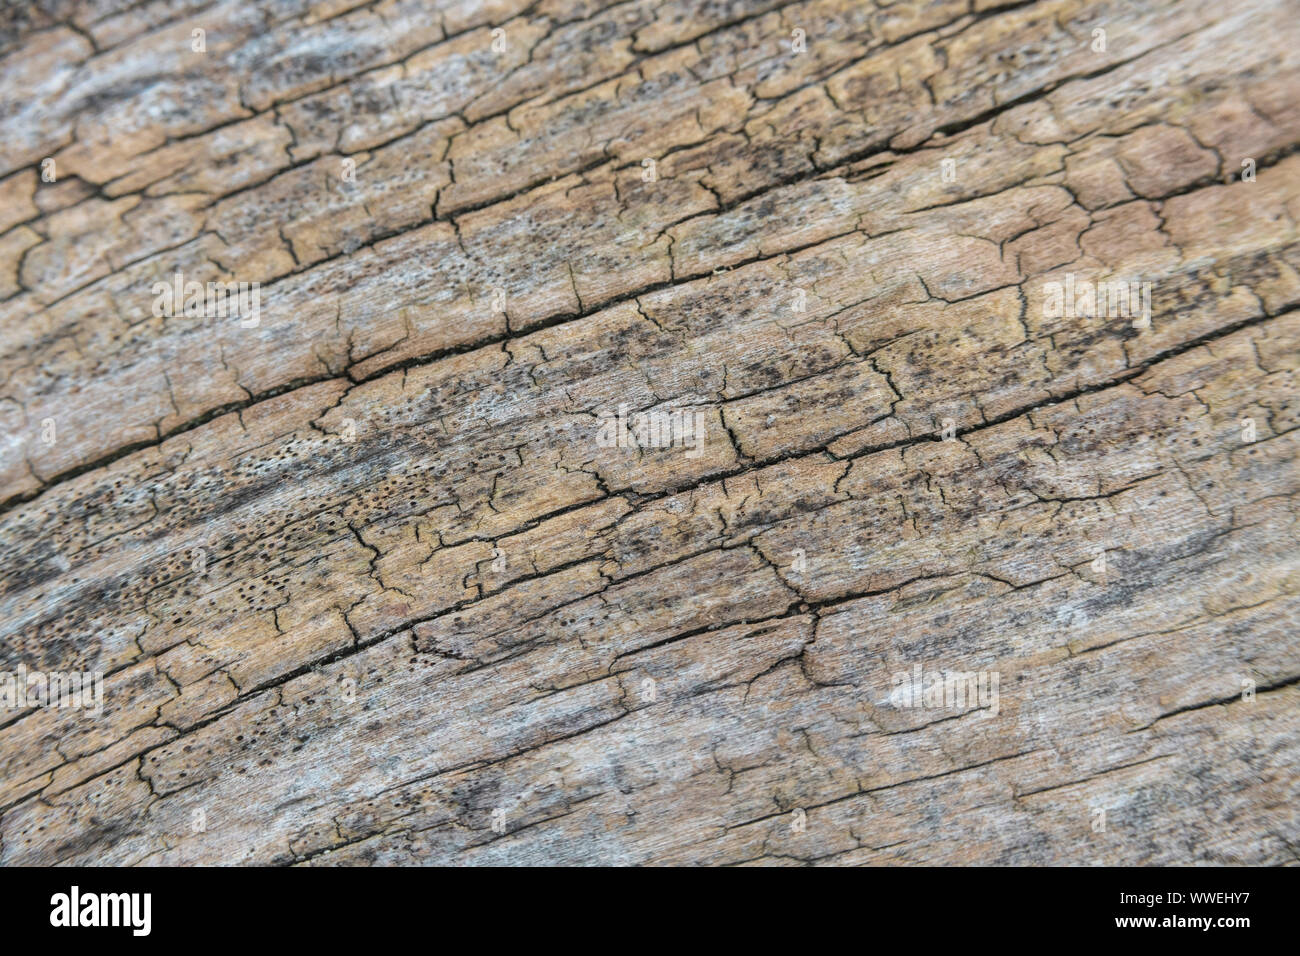 Macro Close-up shot di marciume tronco legno texture. Fusto curvo dà DoF poco profondo con la messa a fuoco limitata a immagine centrale ricambi & resto cadere. Foto Stock